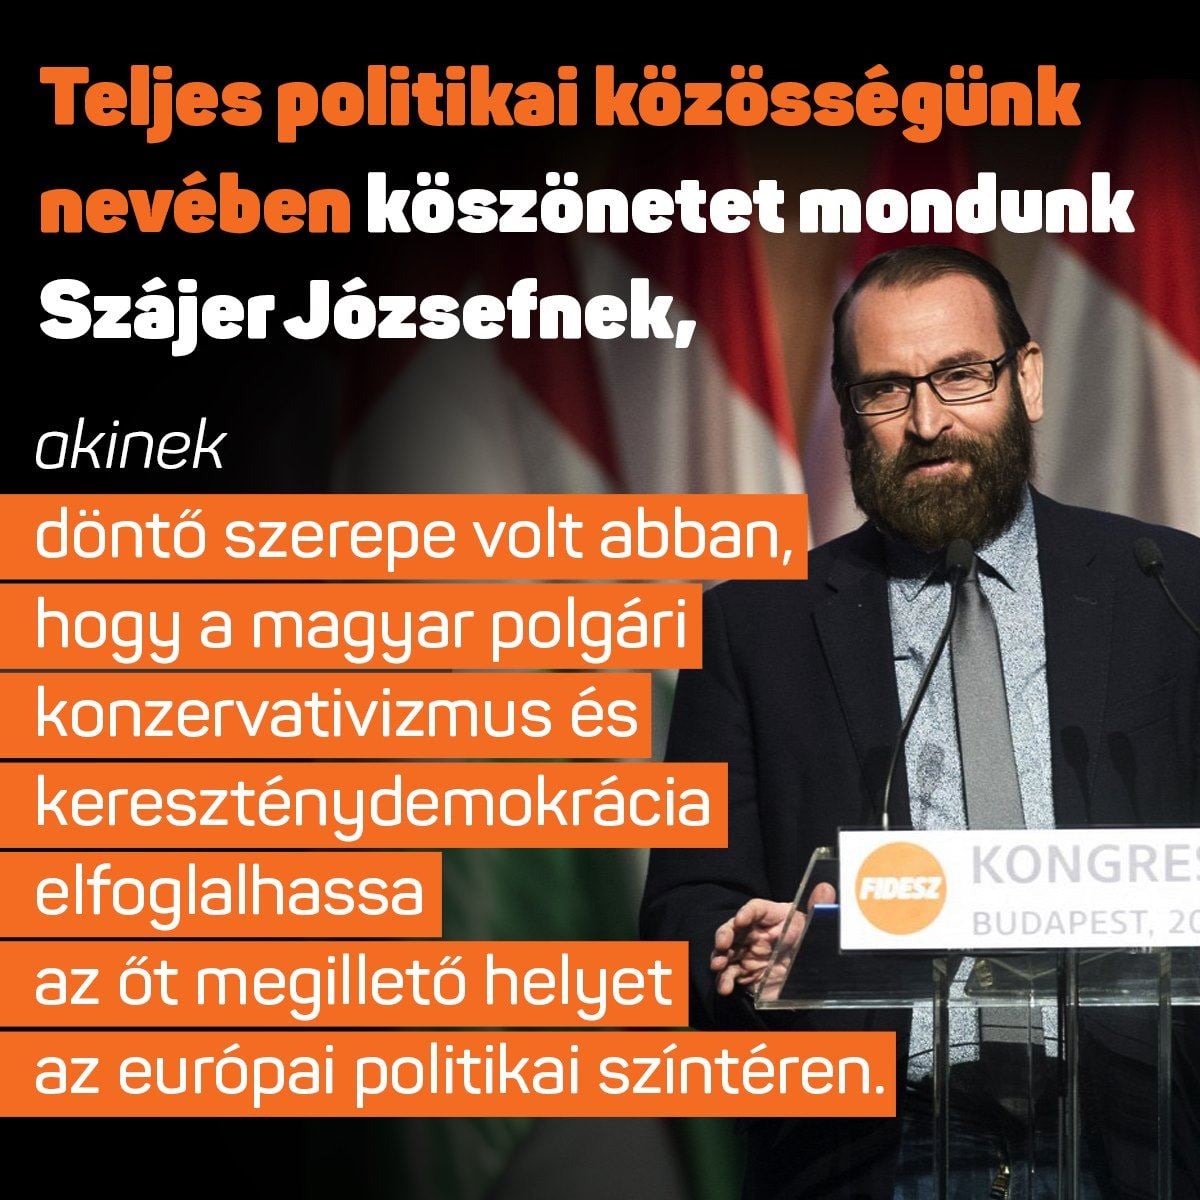 szajer_koszonet_fidesz_plakat.jpg